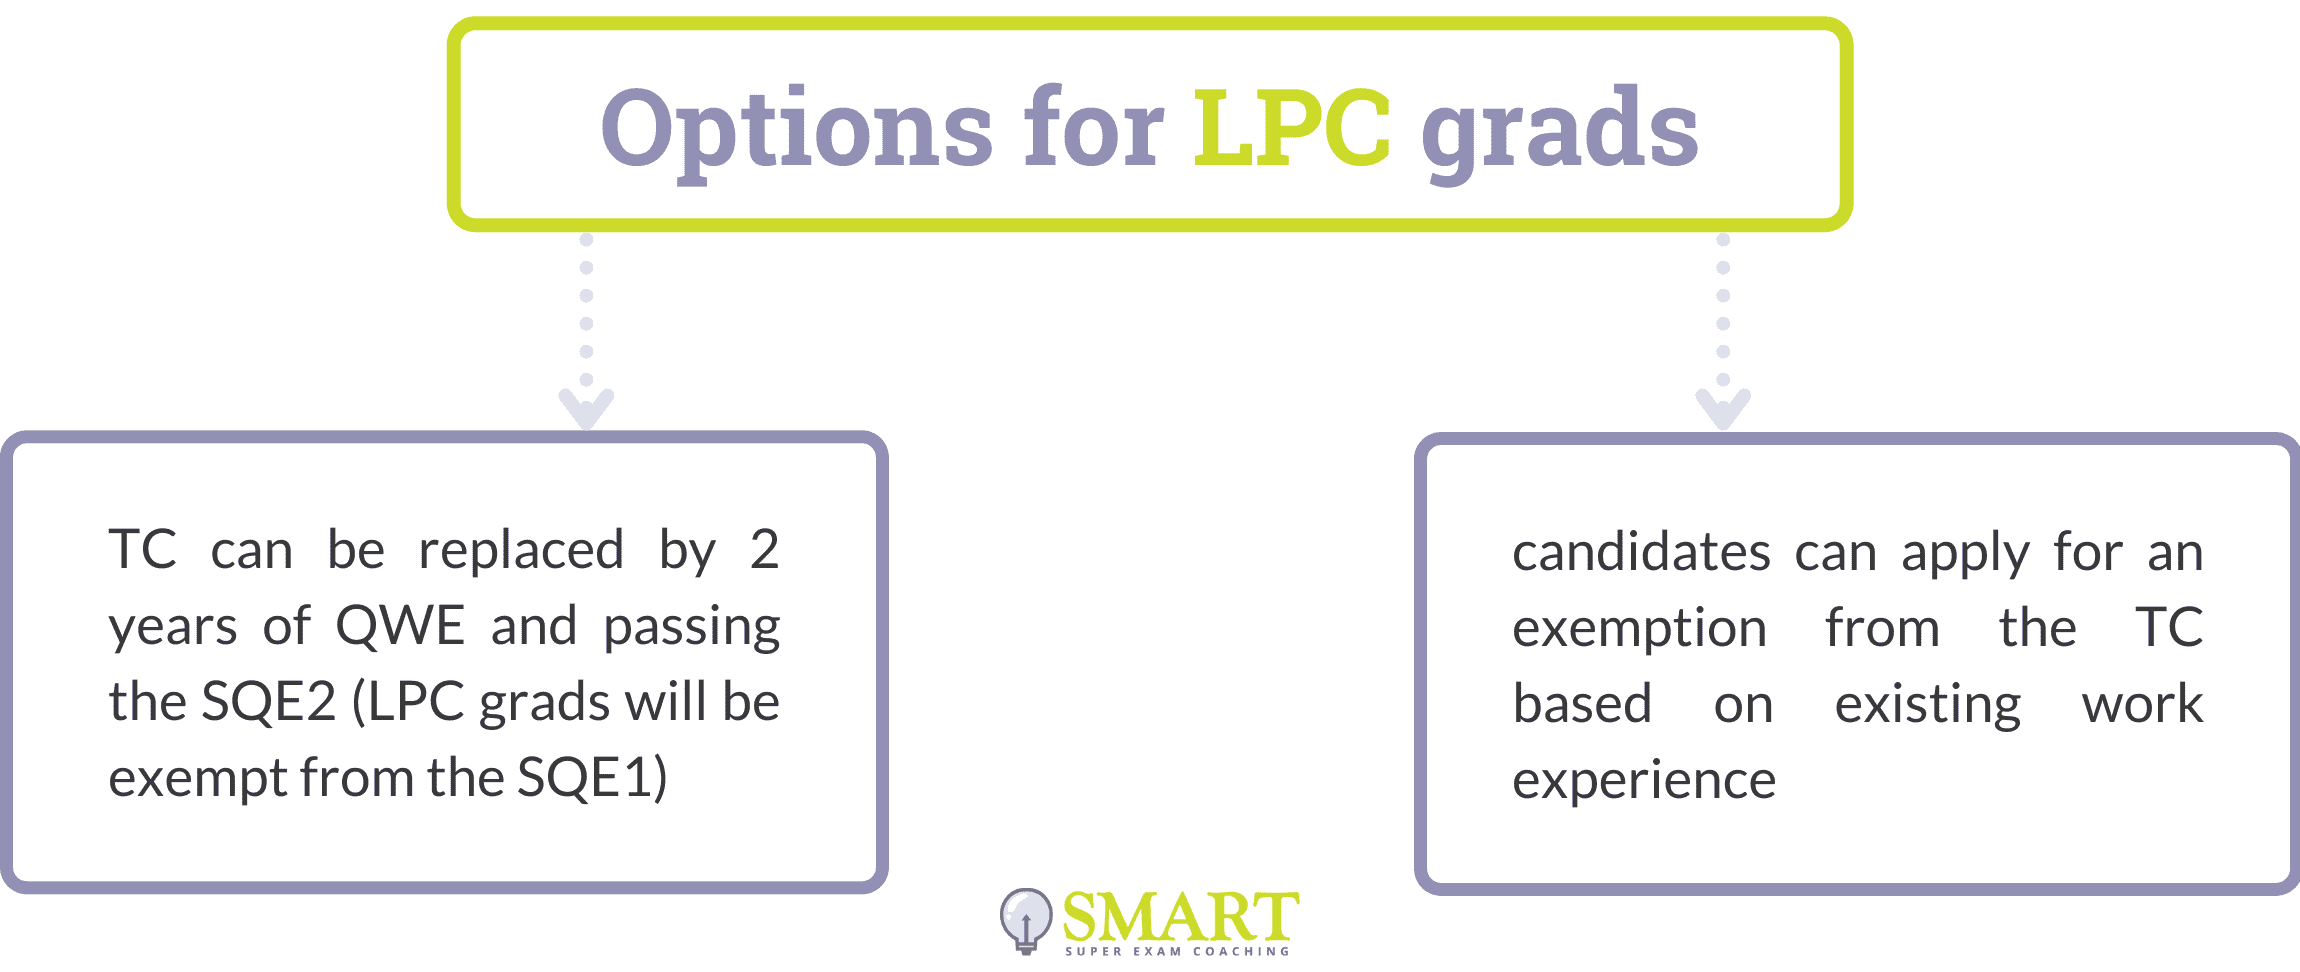 Options for LPC grads